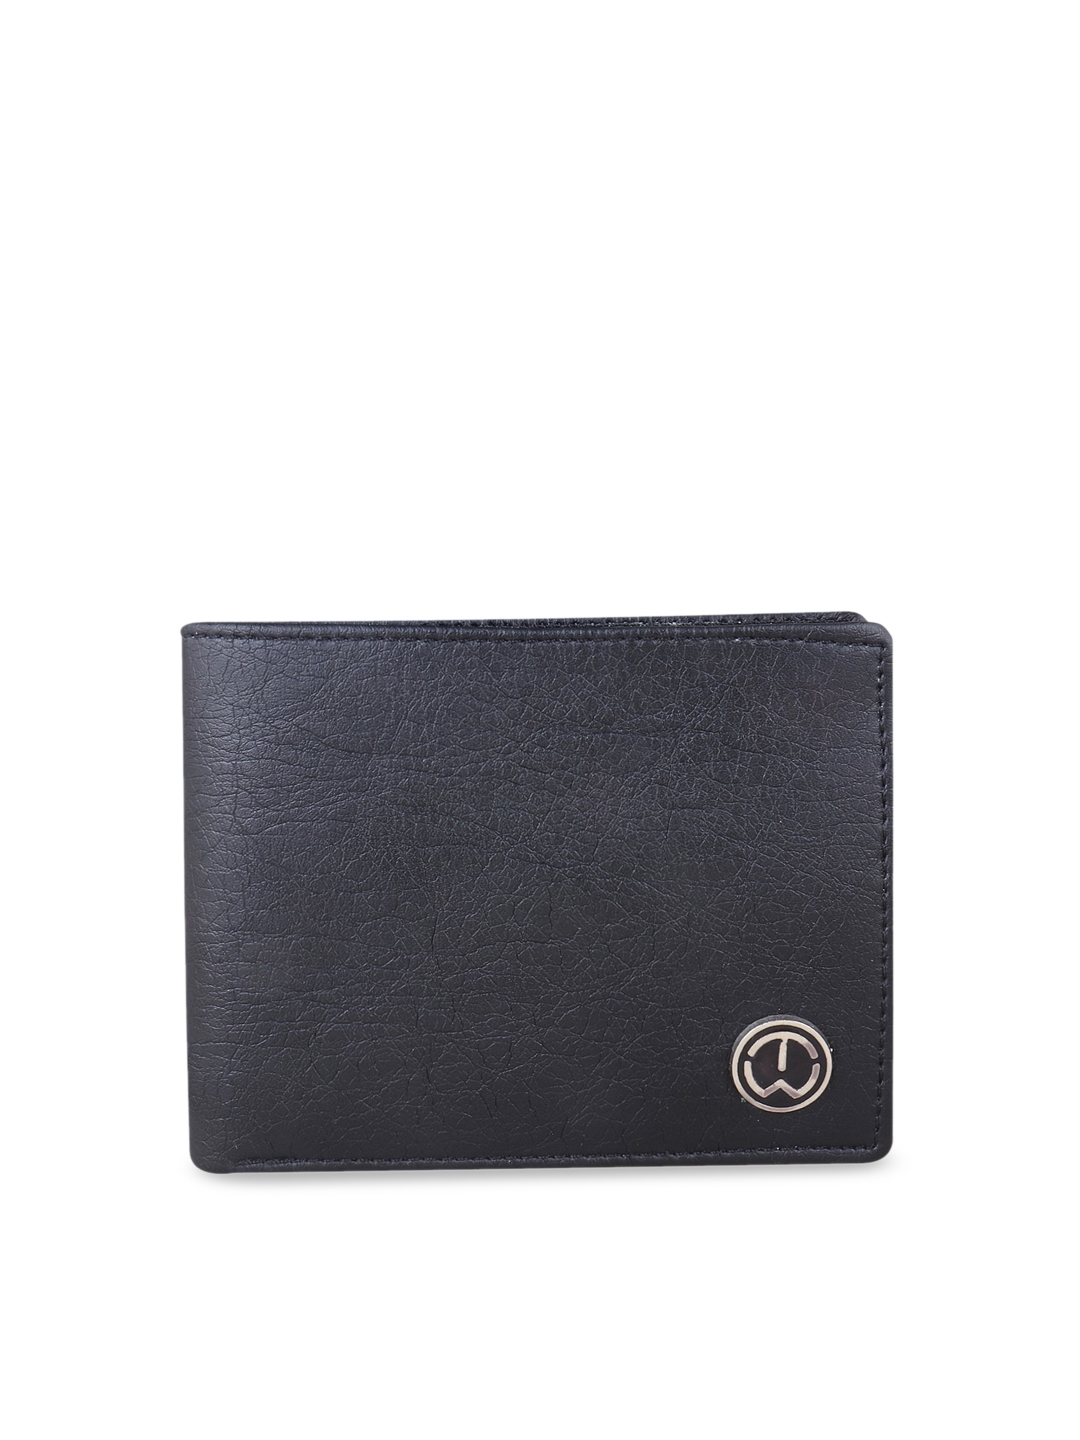 Buy TnW Men Black Solid Two Fold Wallet - Wallets for Men 13122738 | Myntra